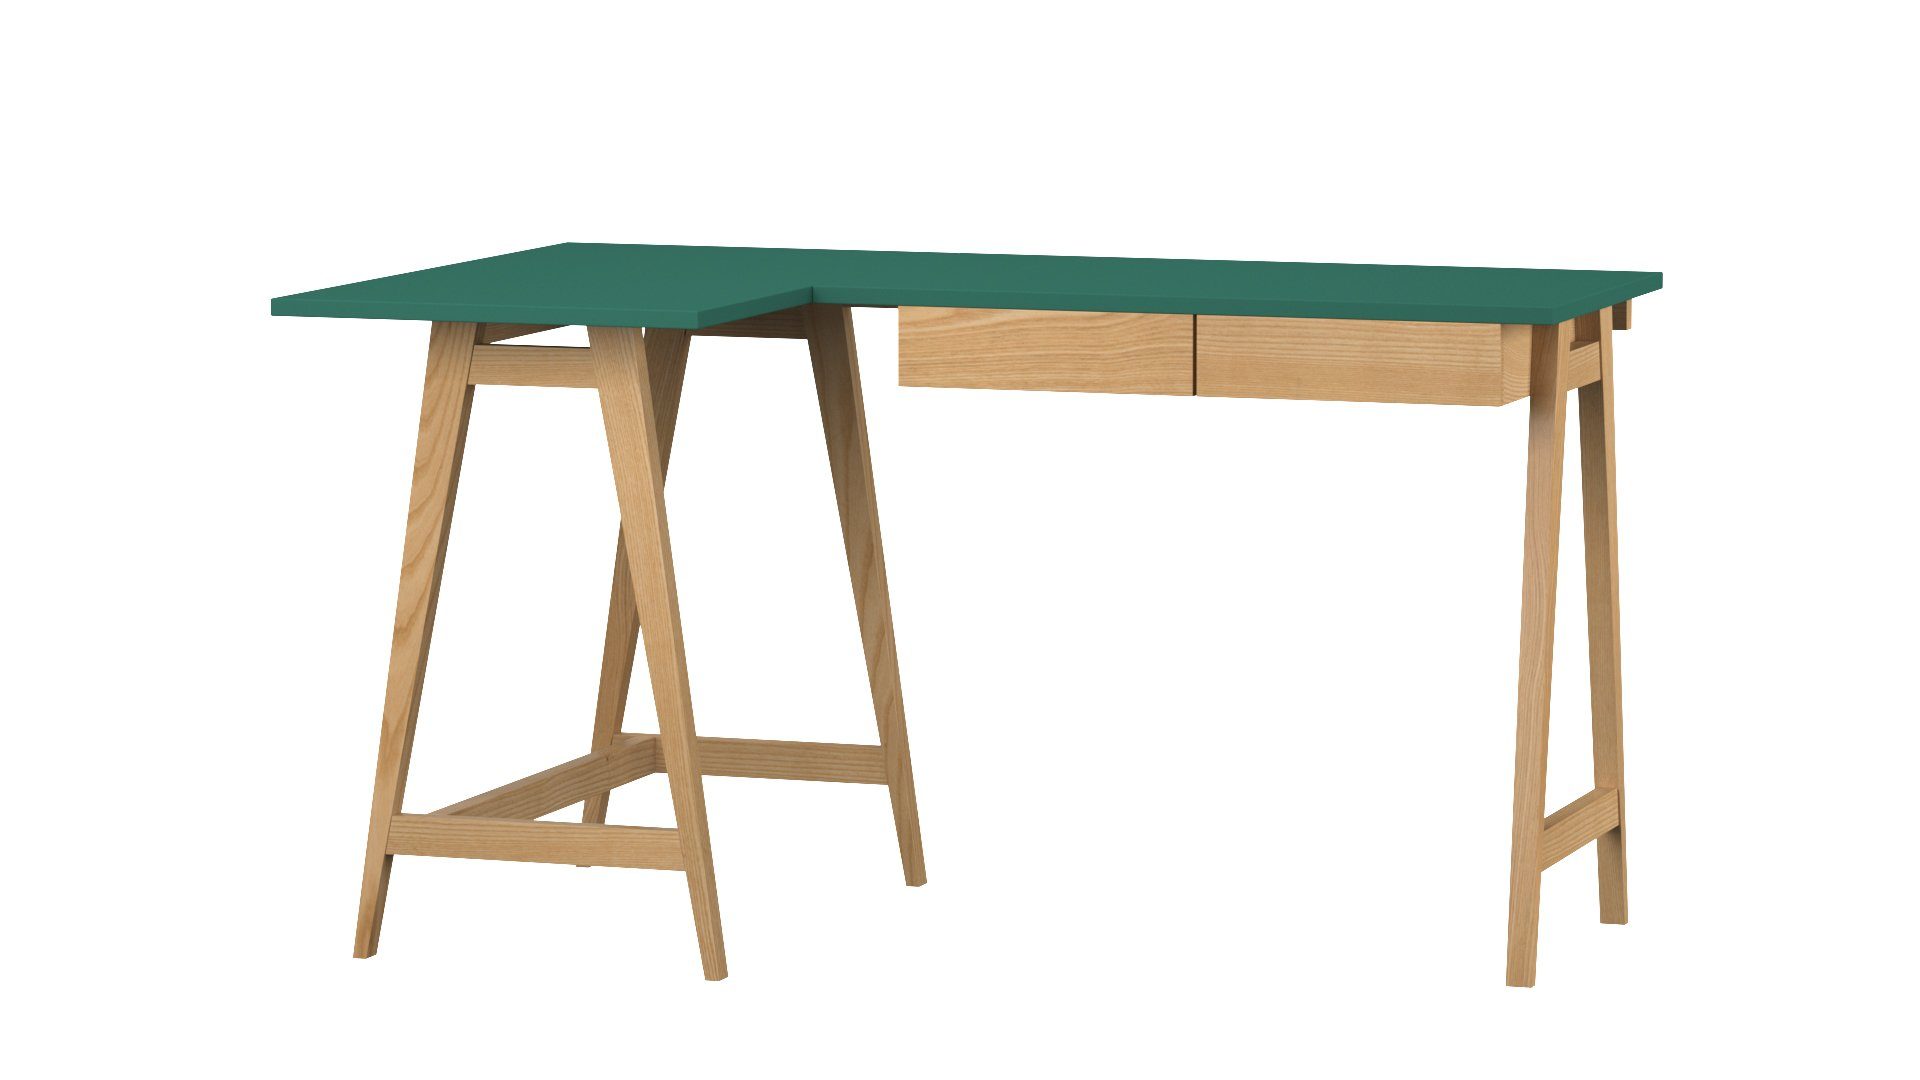 Siblo Schreibtisch Eckschreibtisch Katia mit Eschenholz Schreibtisch minimalistisches MDF-Platte Schubladen Katia - Kinderzimmer Jugendzimmer - - mit Moderner Schubladen) - - Grün (Eckschreibtisch - Design